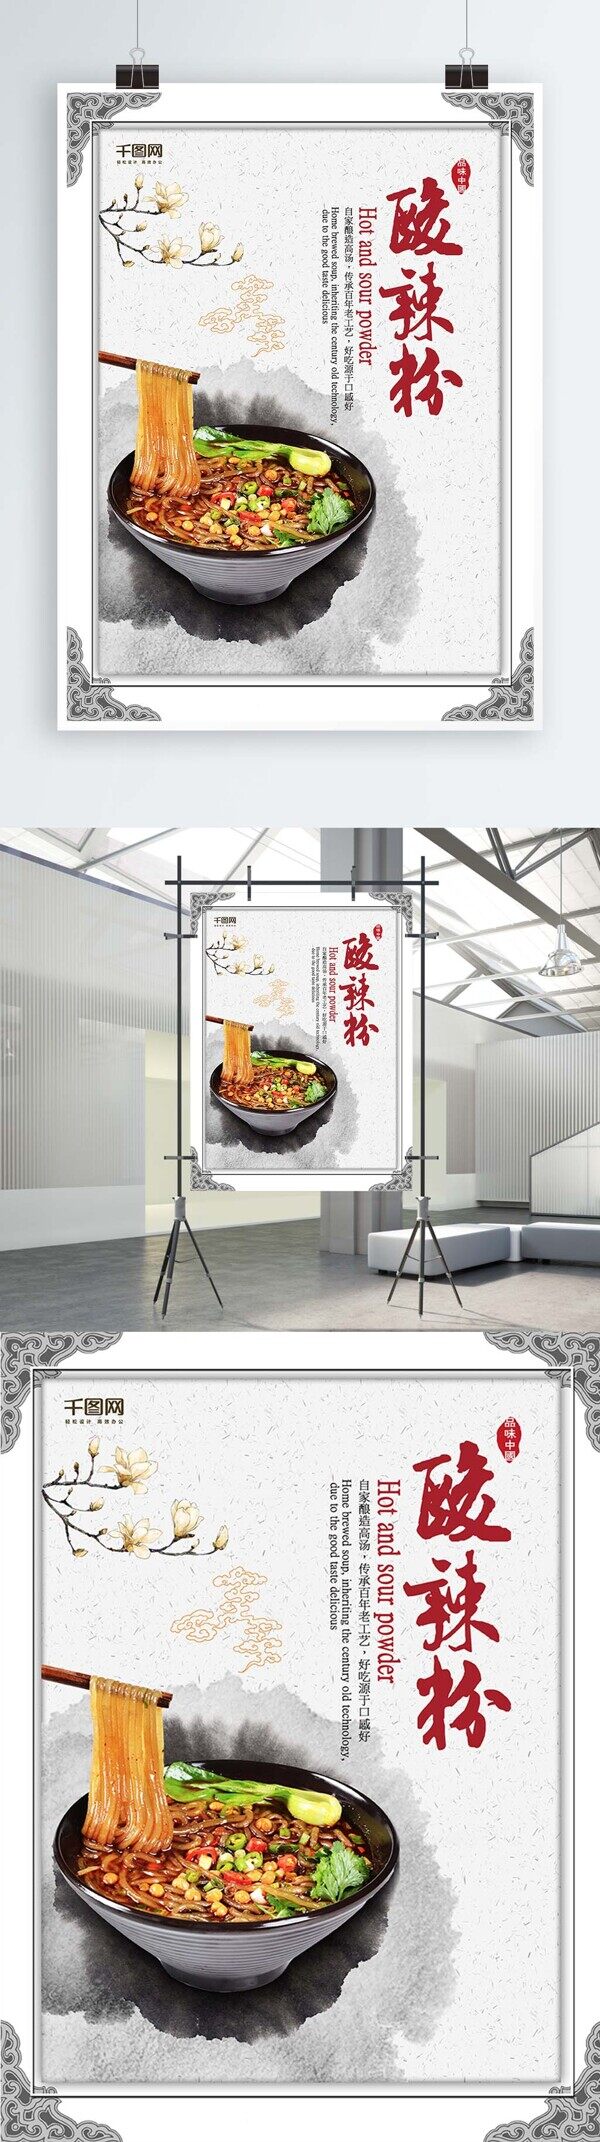 饮食文化浅色调中国风酸辣粉海报